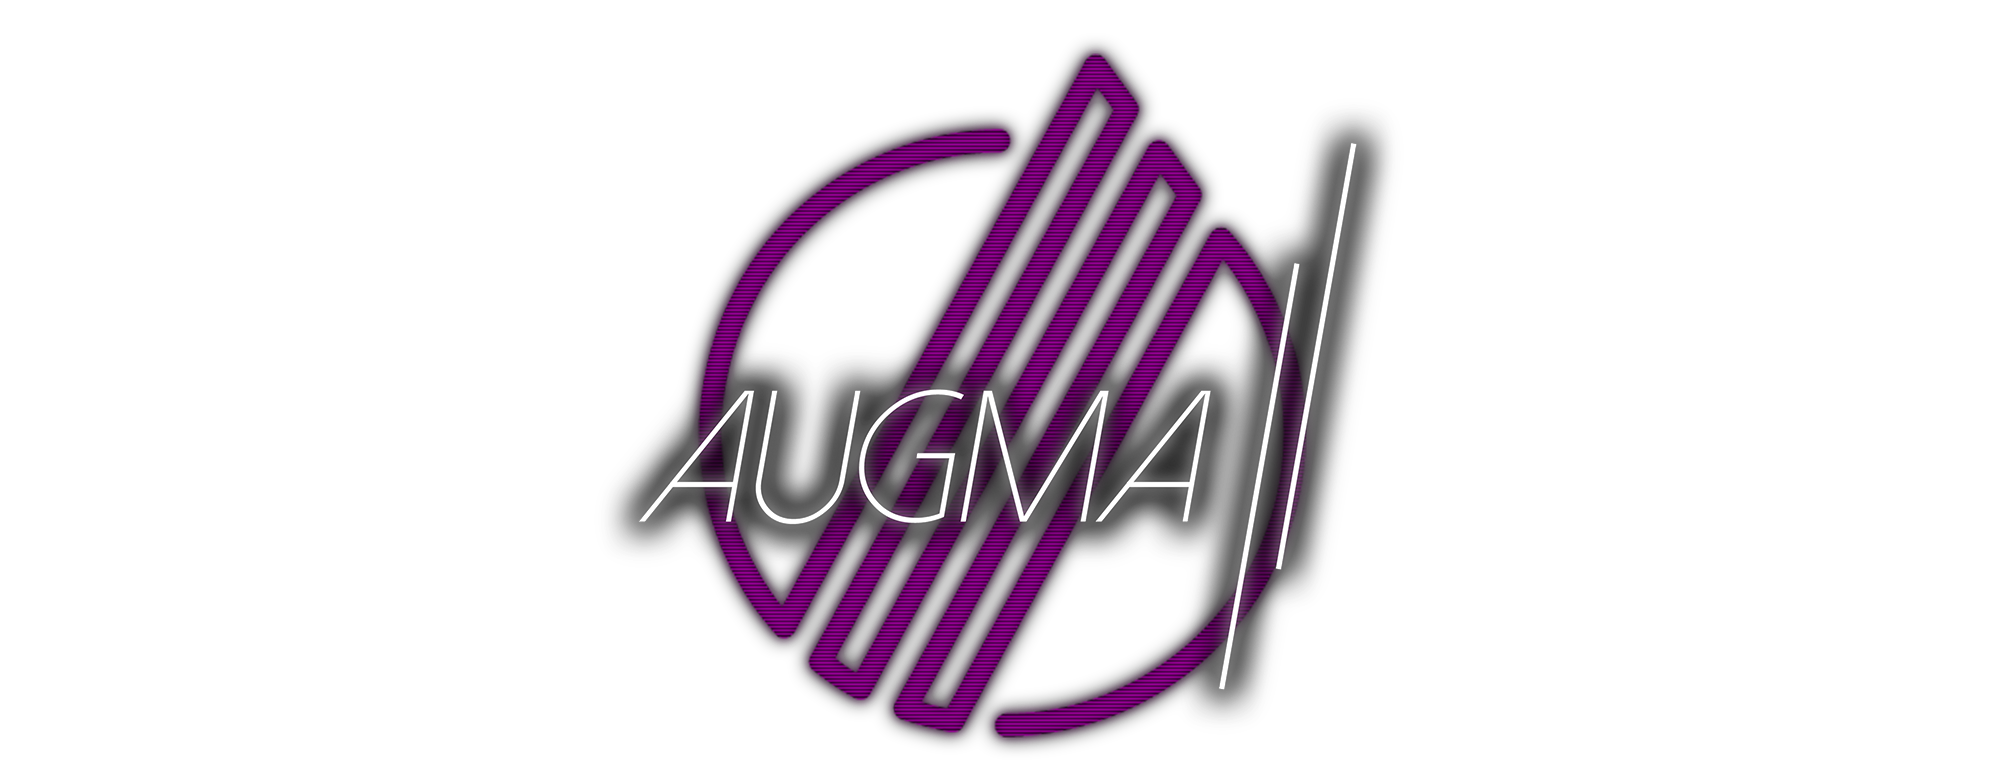 Augma II Arc I